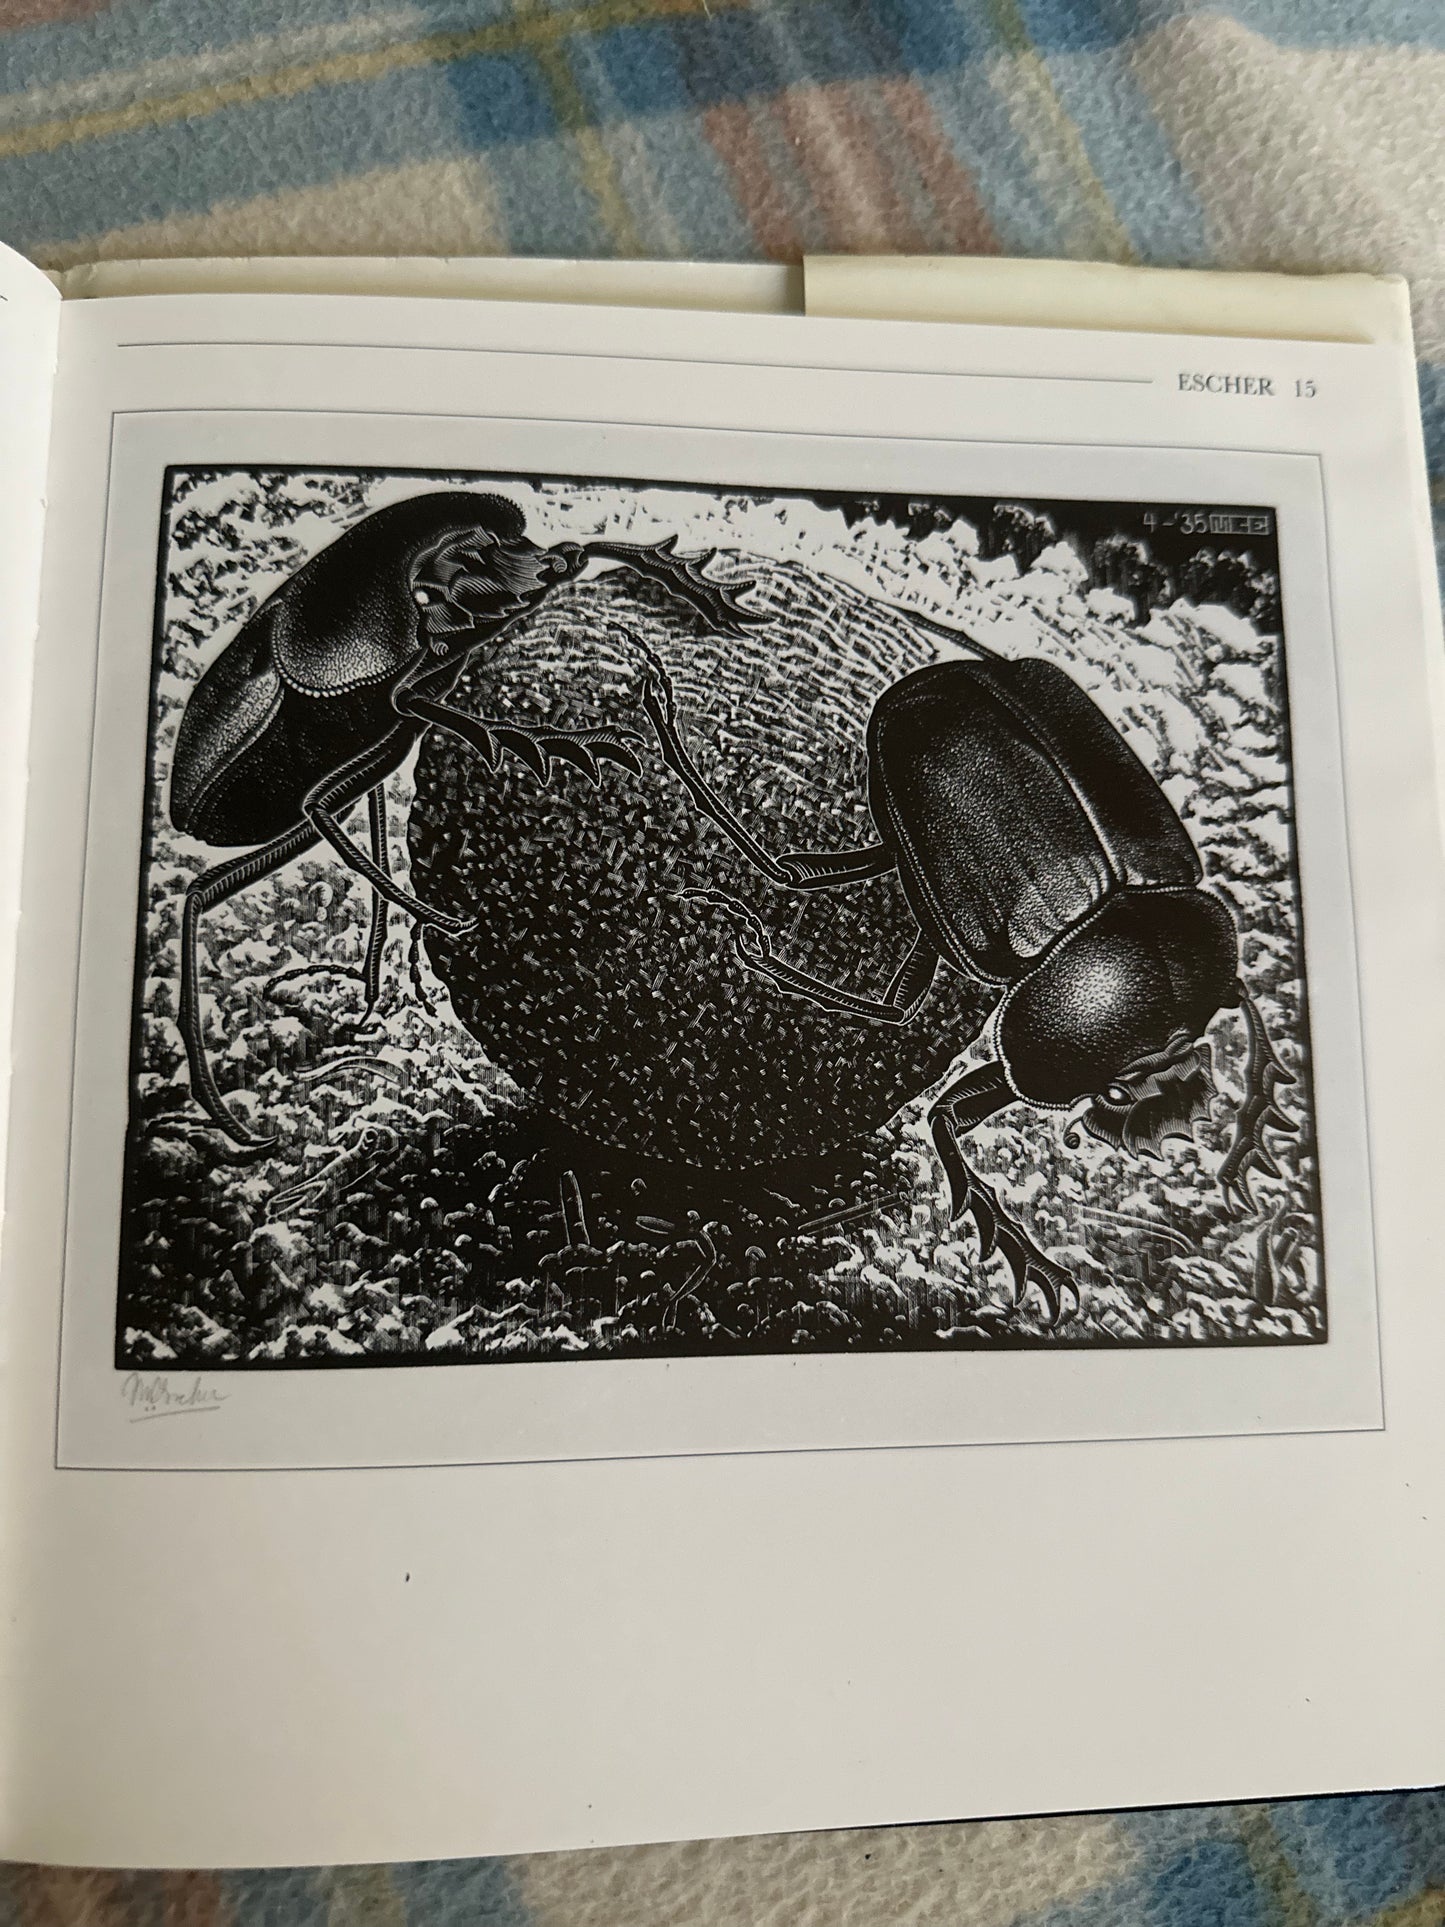 1995 The Life & Works Of Escher - Miranda Fellows(Parragon)